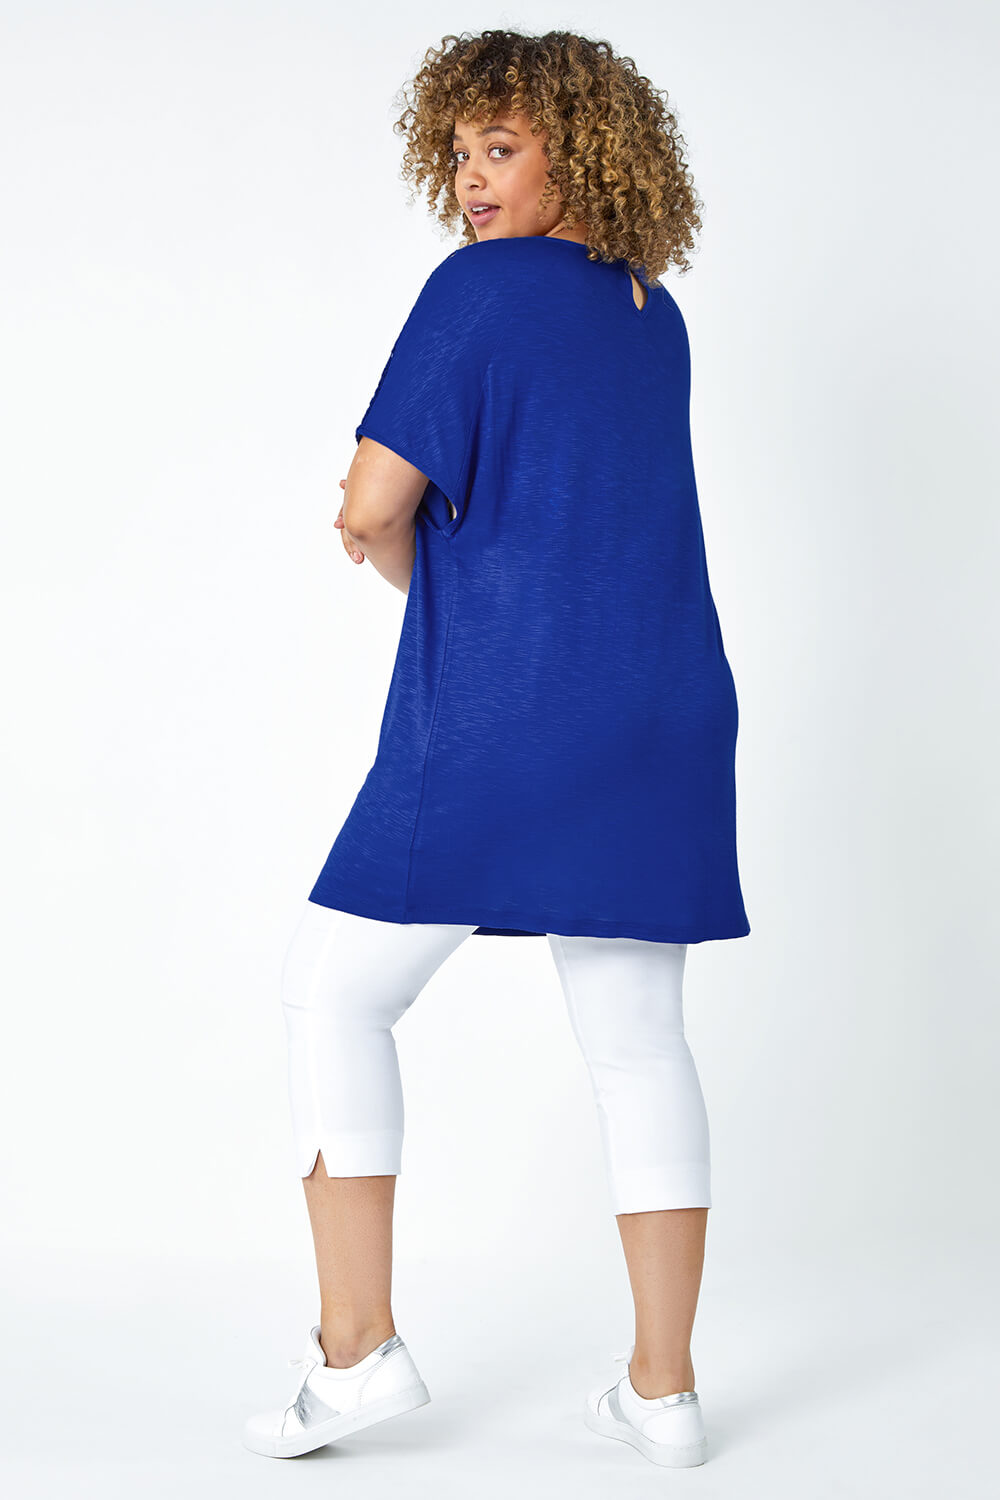 Blue Curve Lace Trim T-Shirt, Image 3 of 5